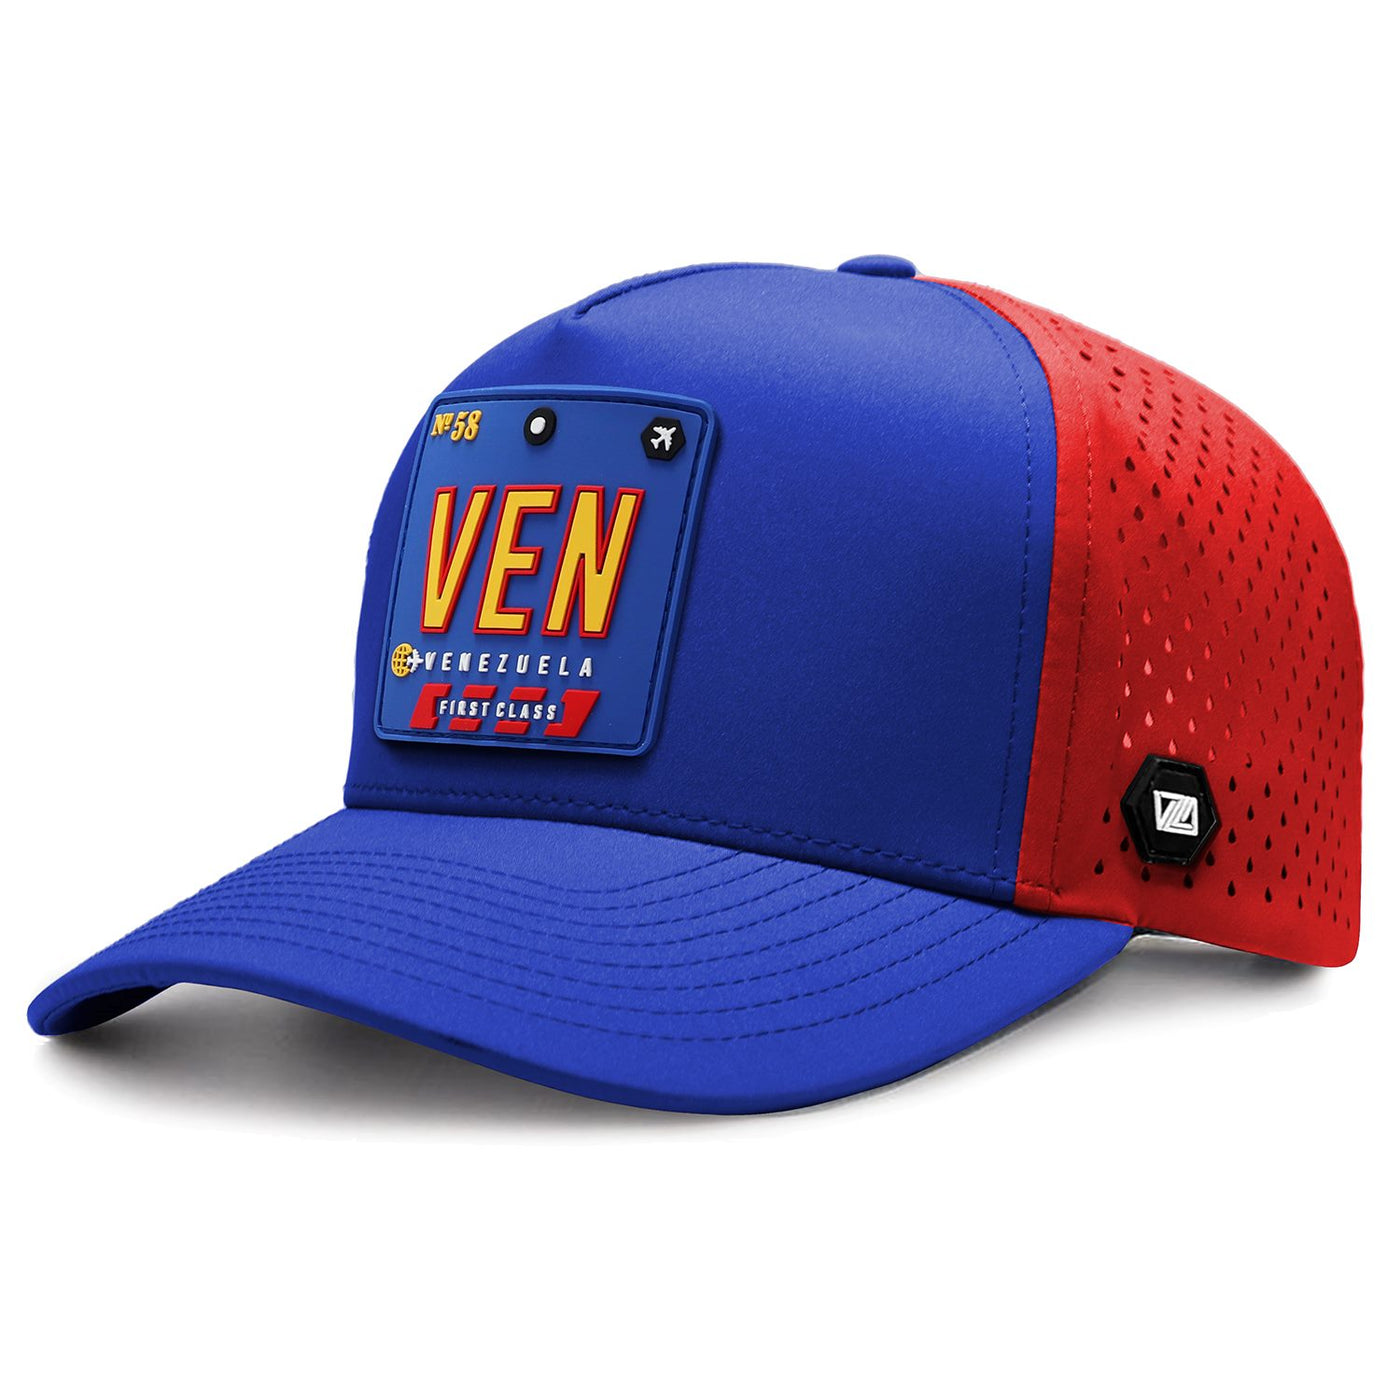 VEN - Venezuela Performance Hat Tricolor